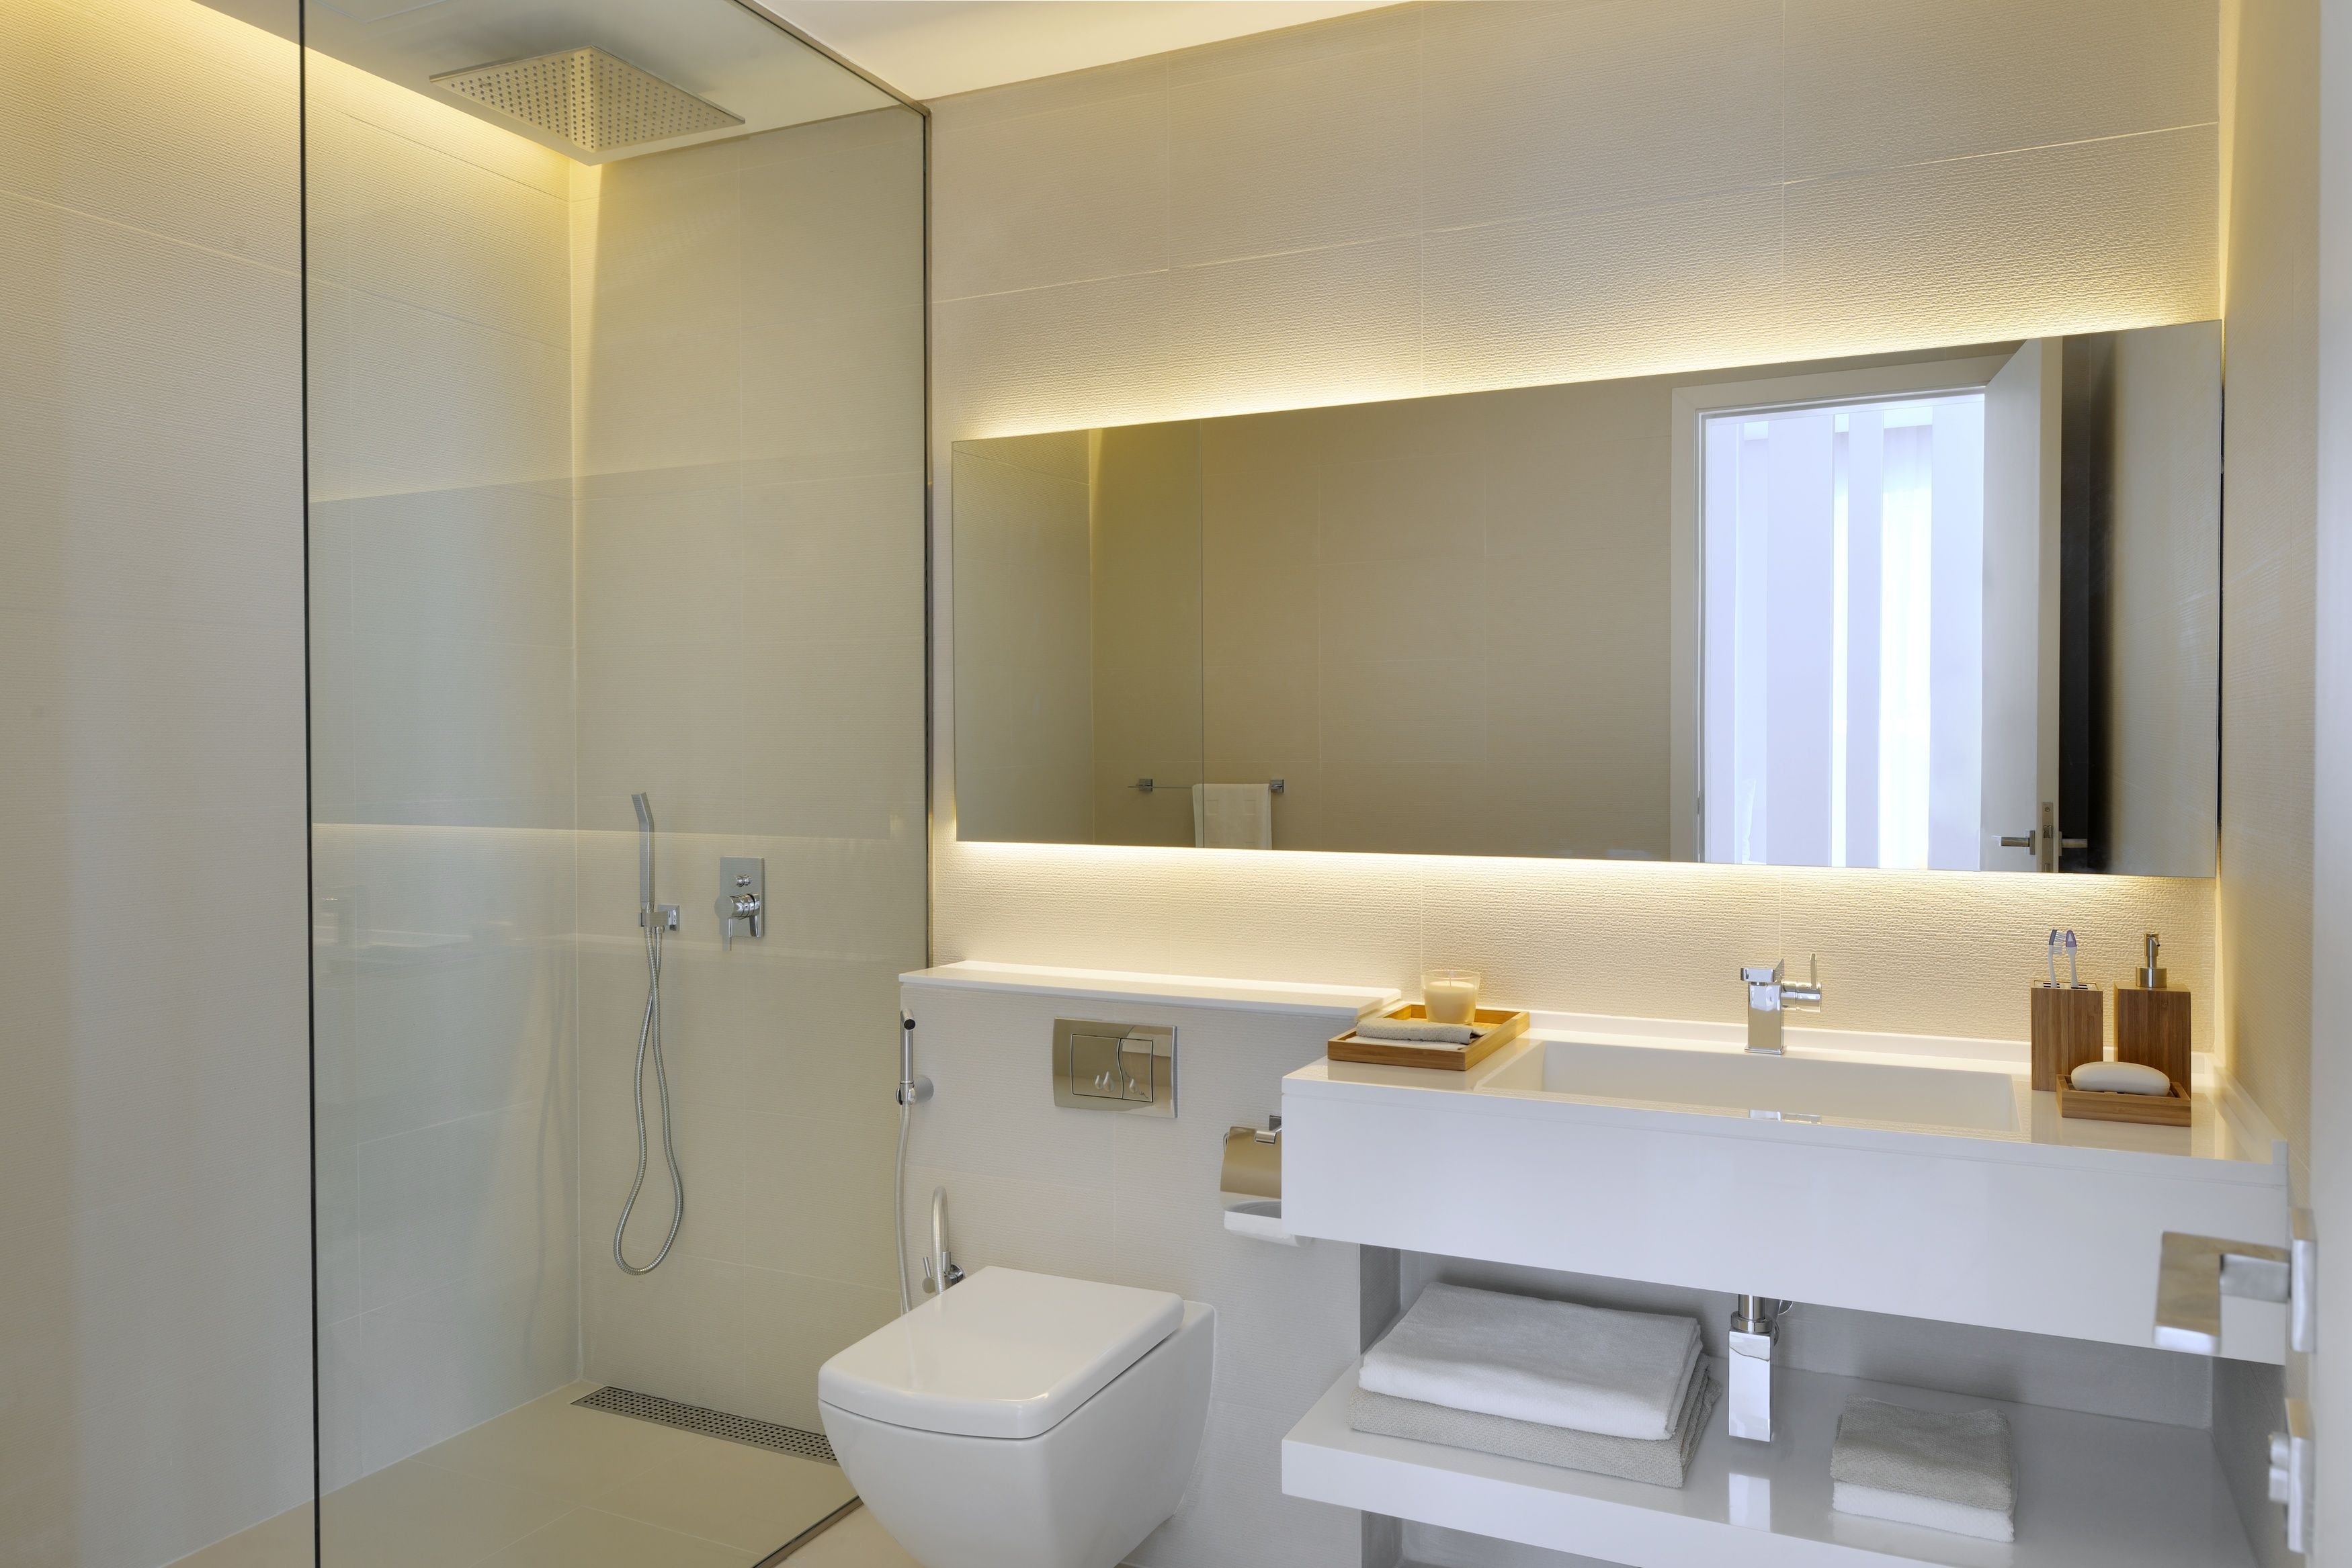 Зеркало снизу. Зеркало для ванной комнаты. Ванная комната с большим зеркалом. Зеркало с подсветкой. Зеркало в ванную комнату с подсветкой.